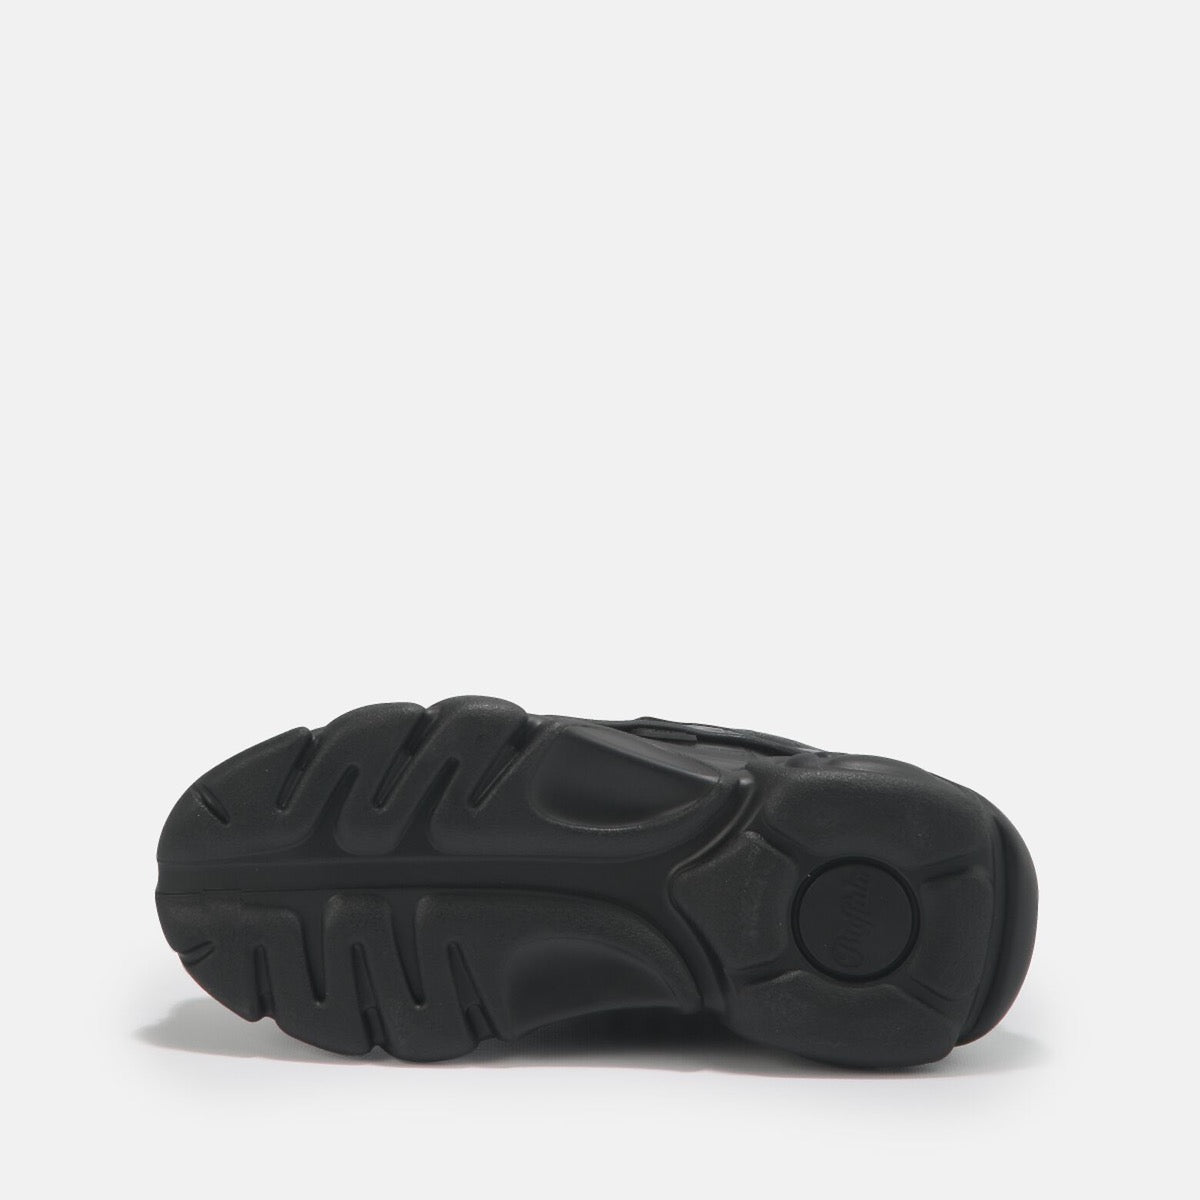 Scarpe BUFFALO Sneakers Vegan linea CLD Corin stampa Cocco colore Nero